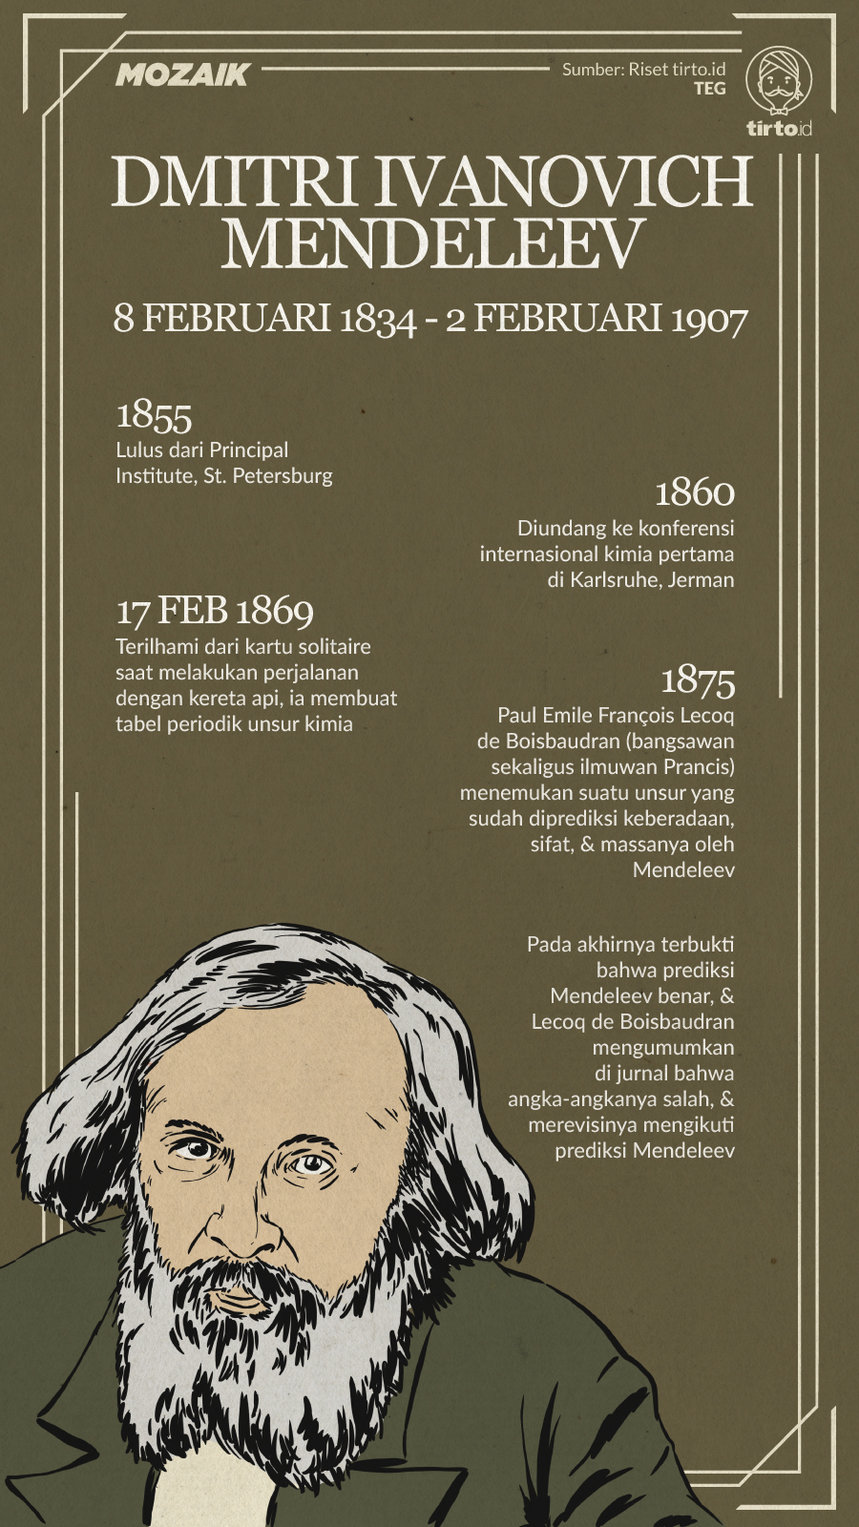 Infografik Mozaik Dmitri Ivanovich Mendeleev